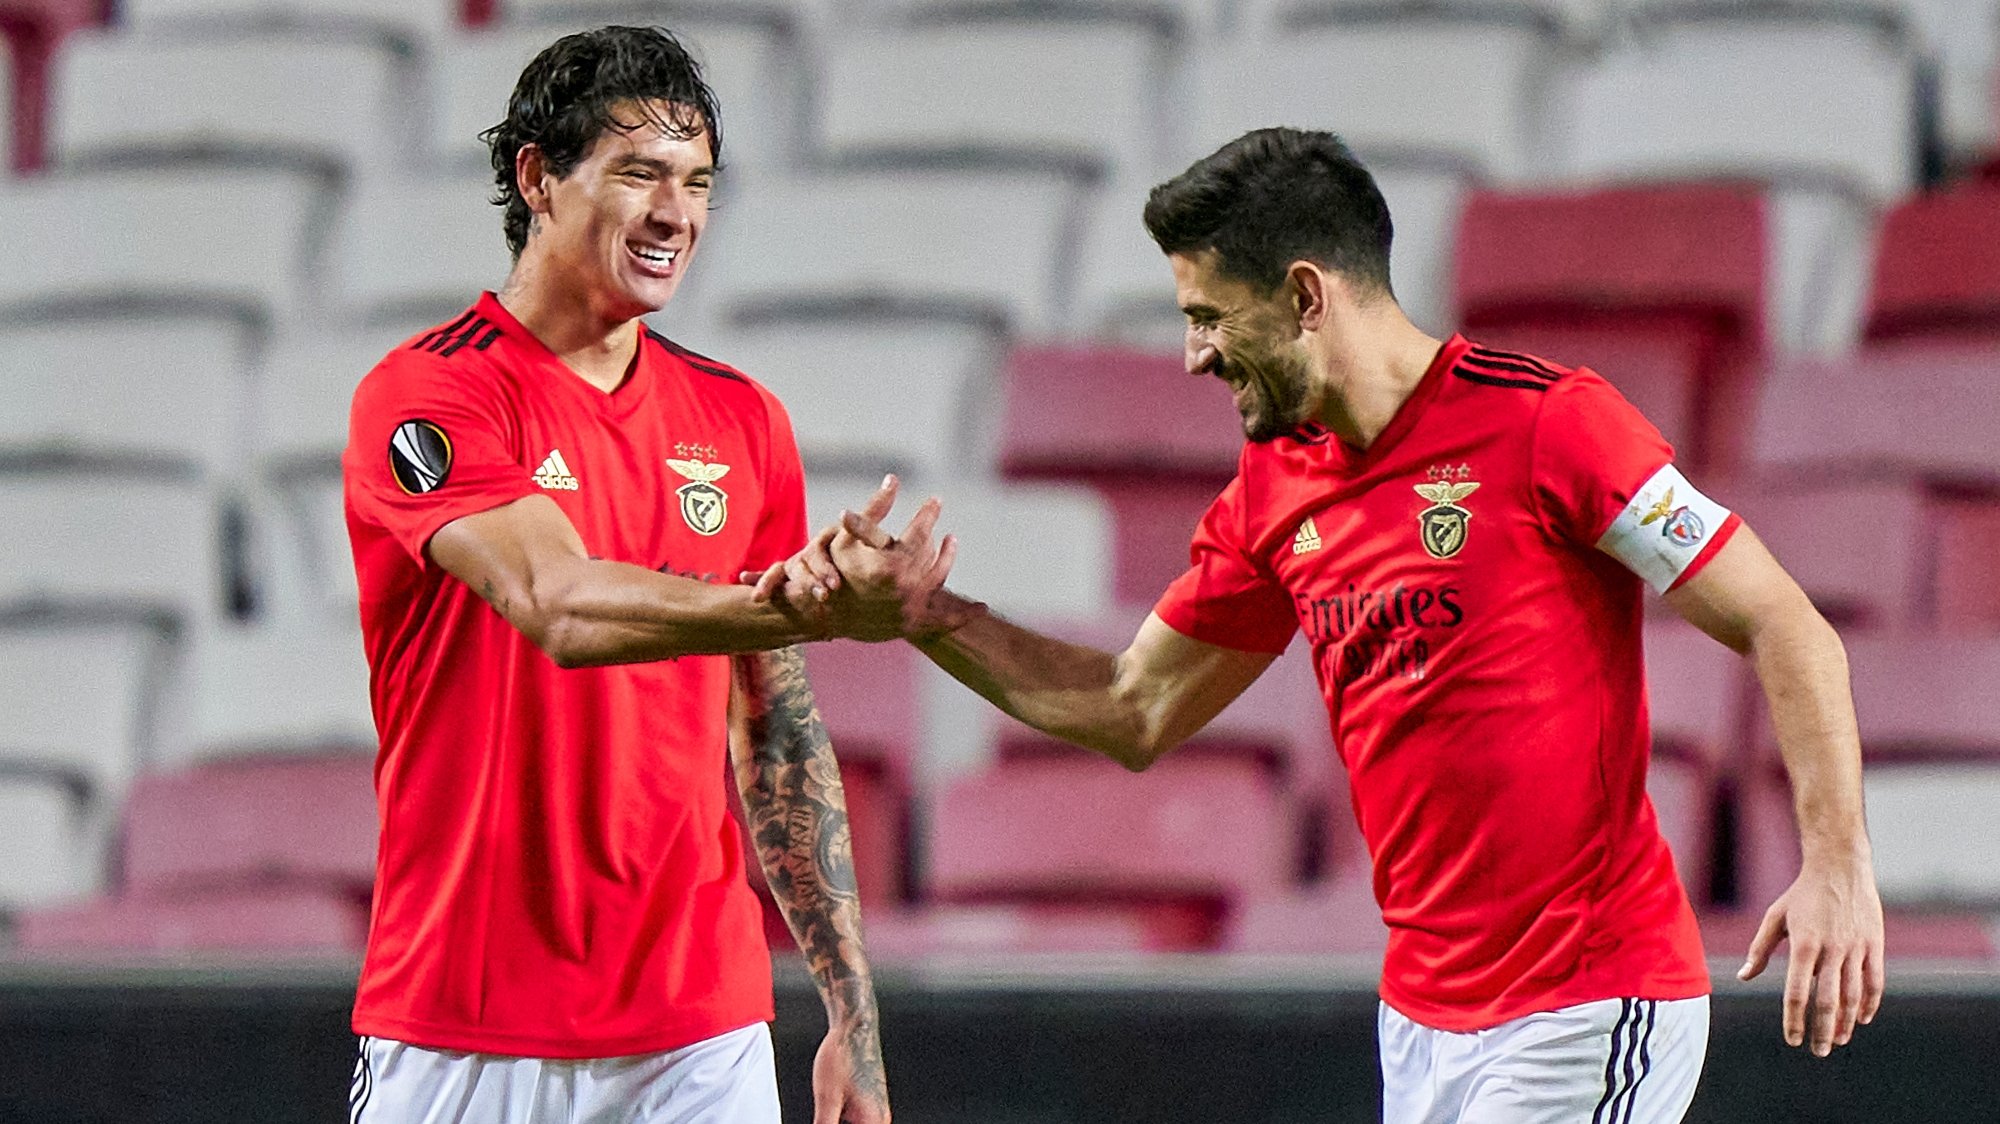 Darwin Núñez regressou à equipa com um golo após assistência de Pizzi, que também marcou na goleada do Benfica